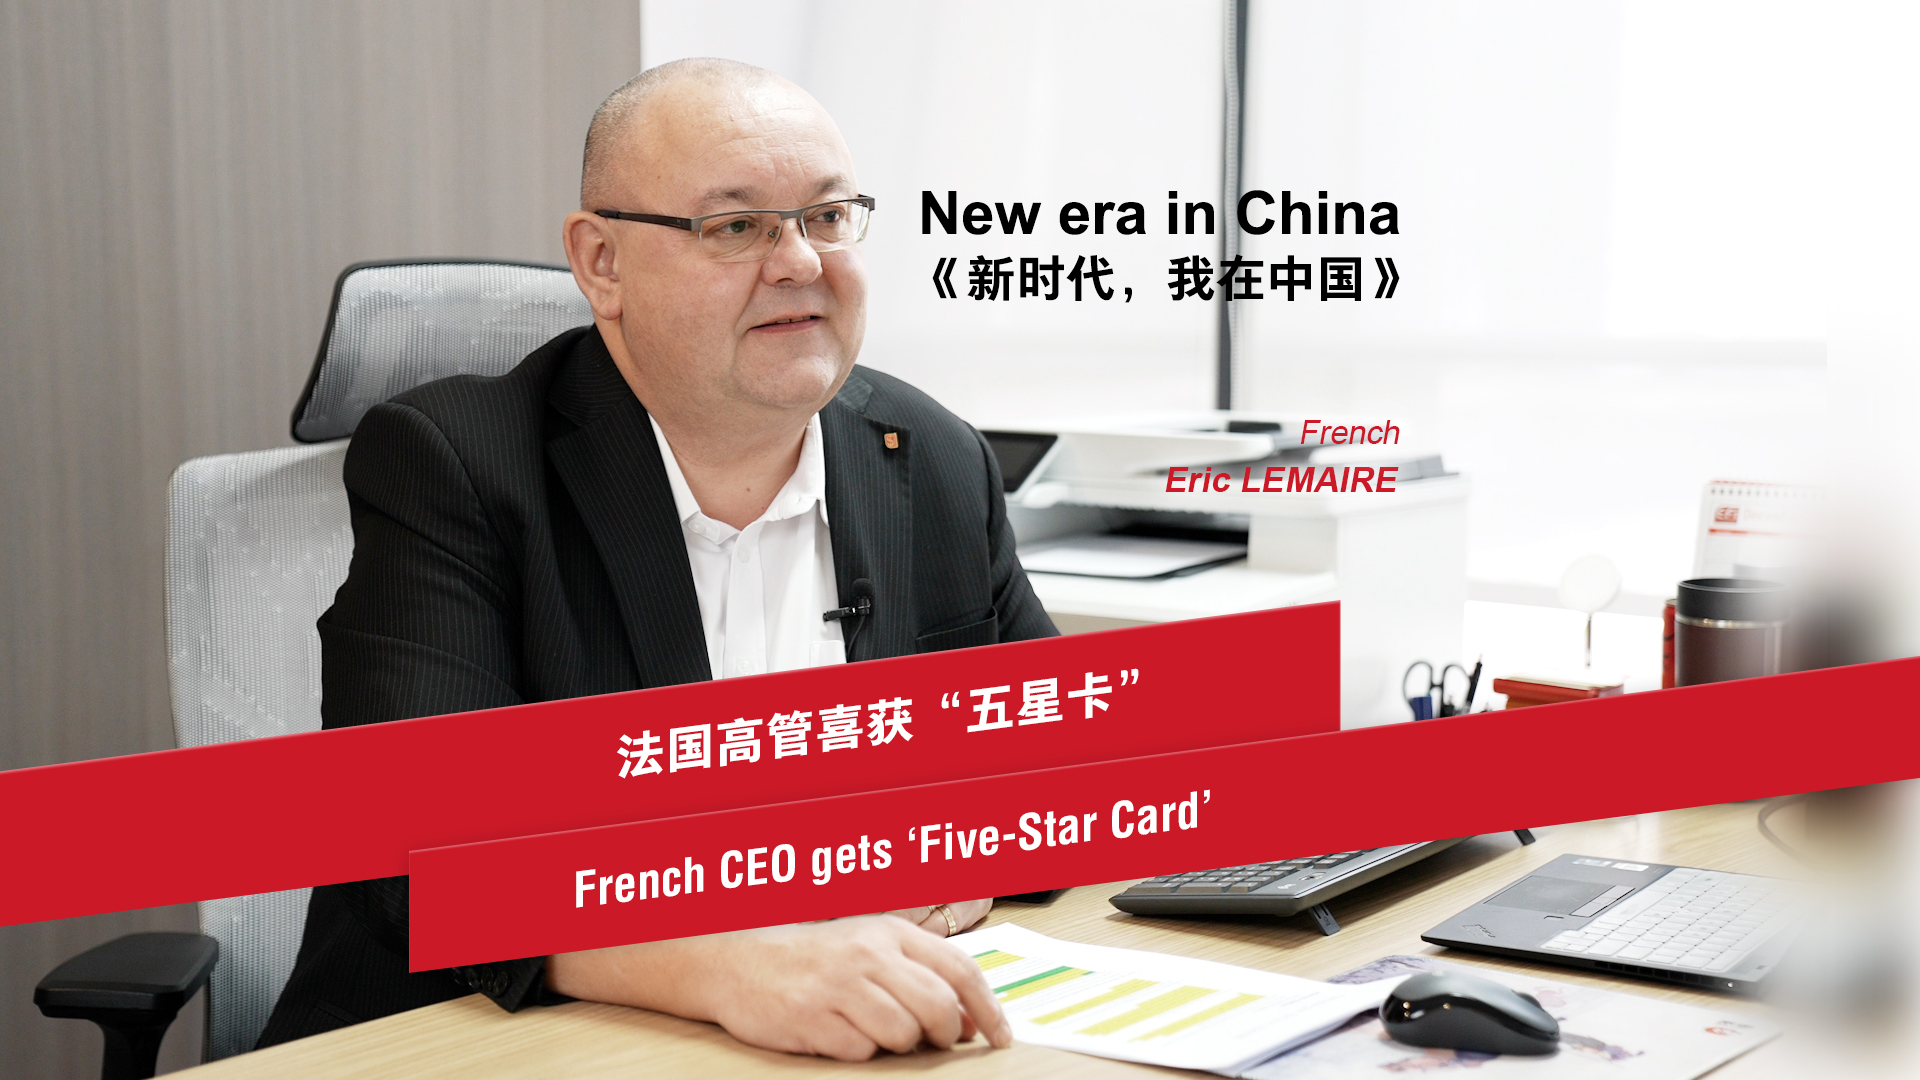 프랑스 CEO, 중국에서 '오성카드' 취득